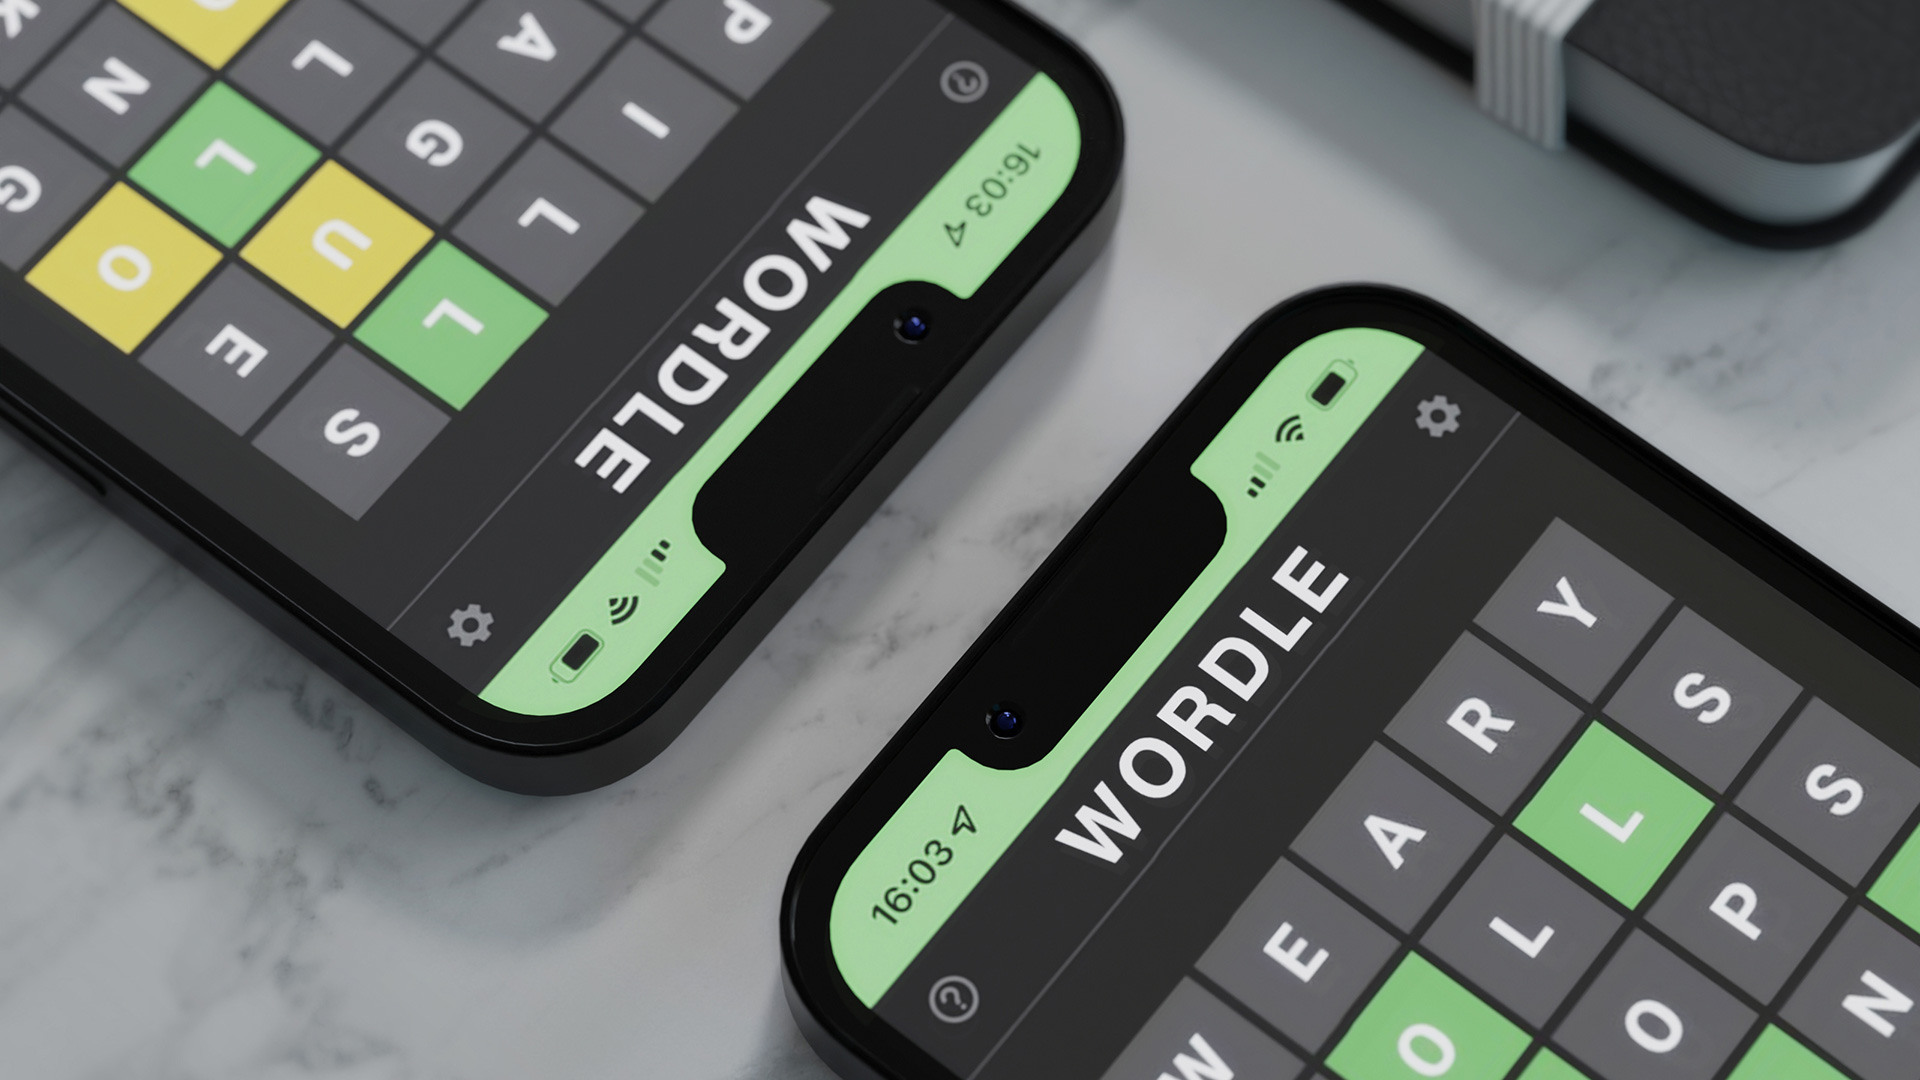 O jogo Wordle exibido em dois smartphones